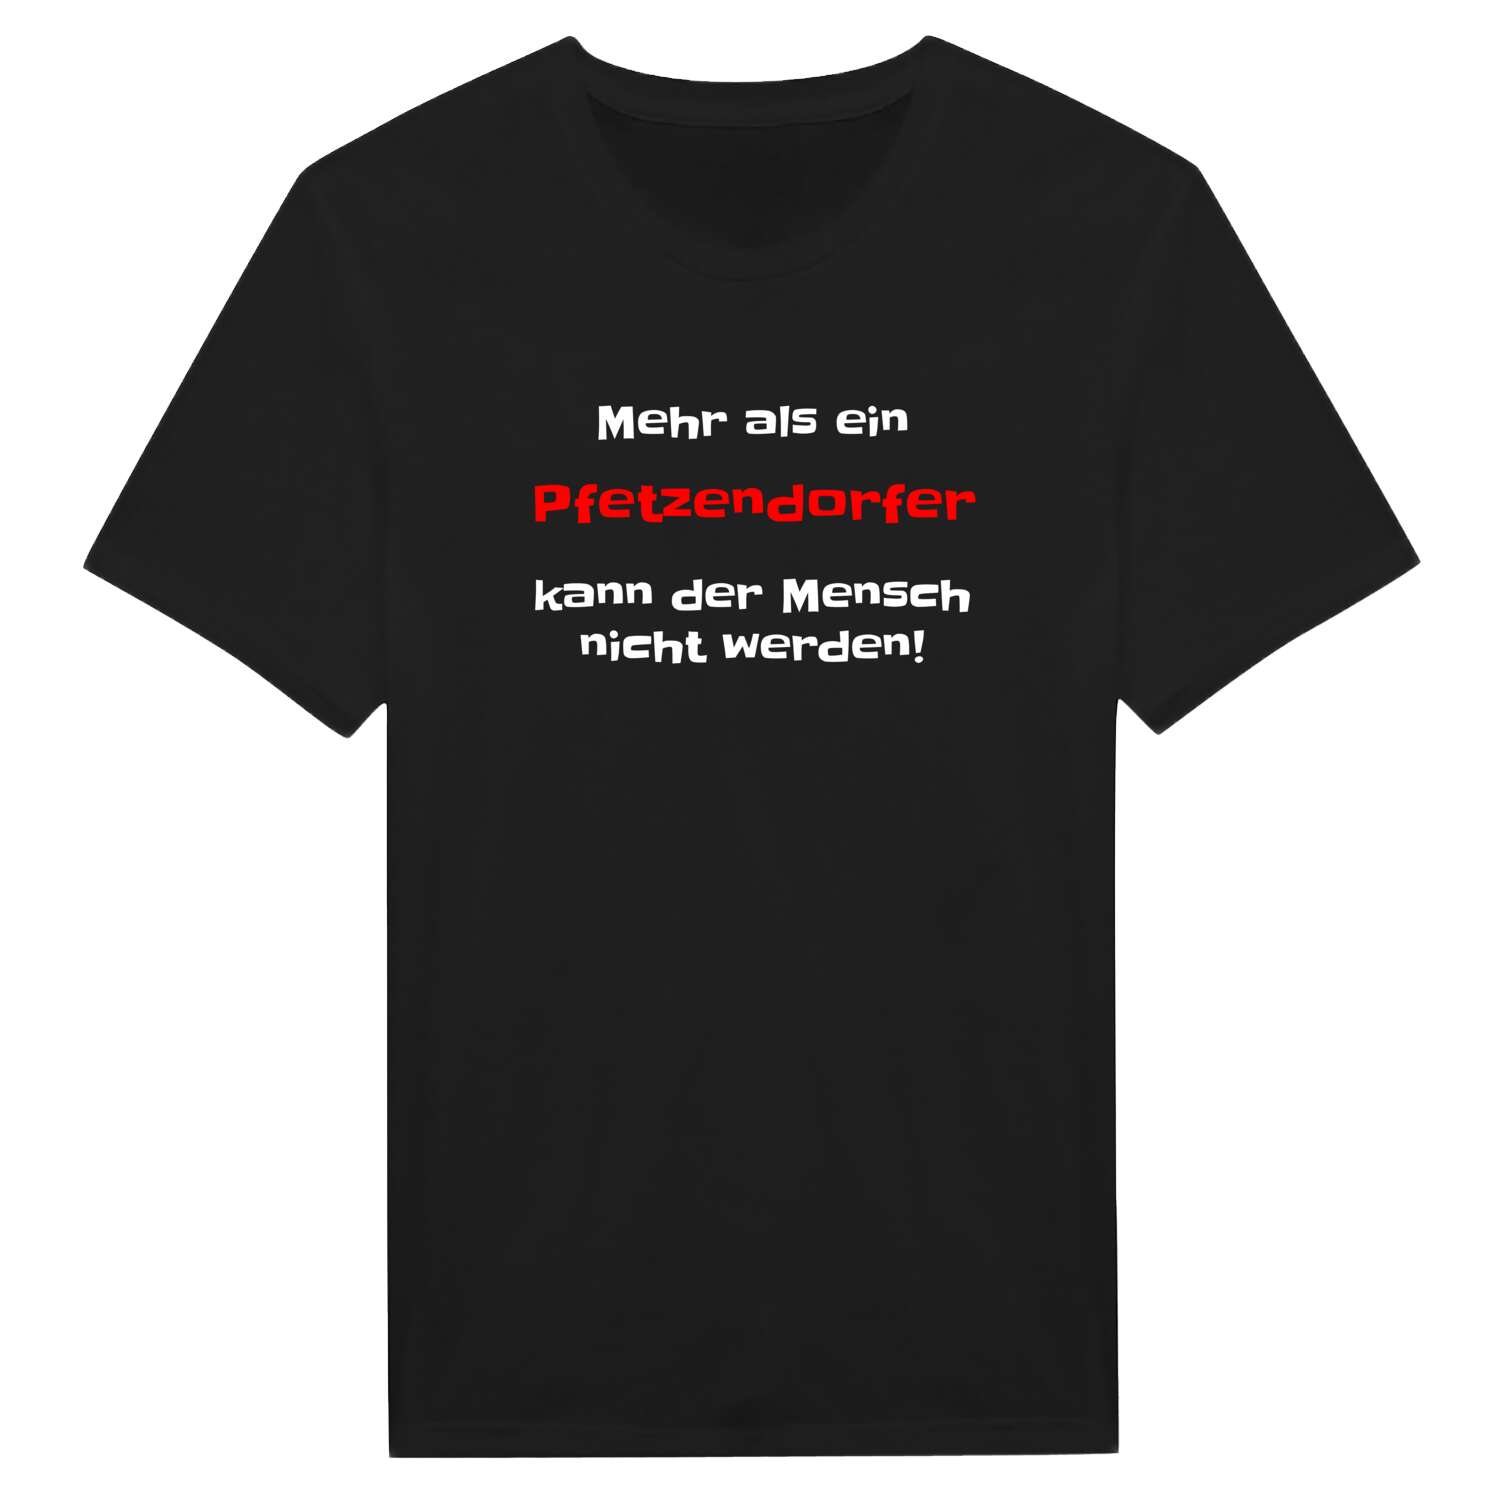 Pfetzendorf T-Shirt »Mehr als ein«